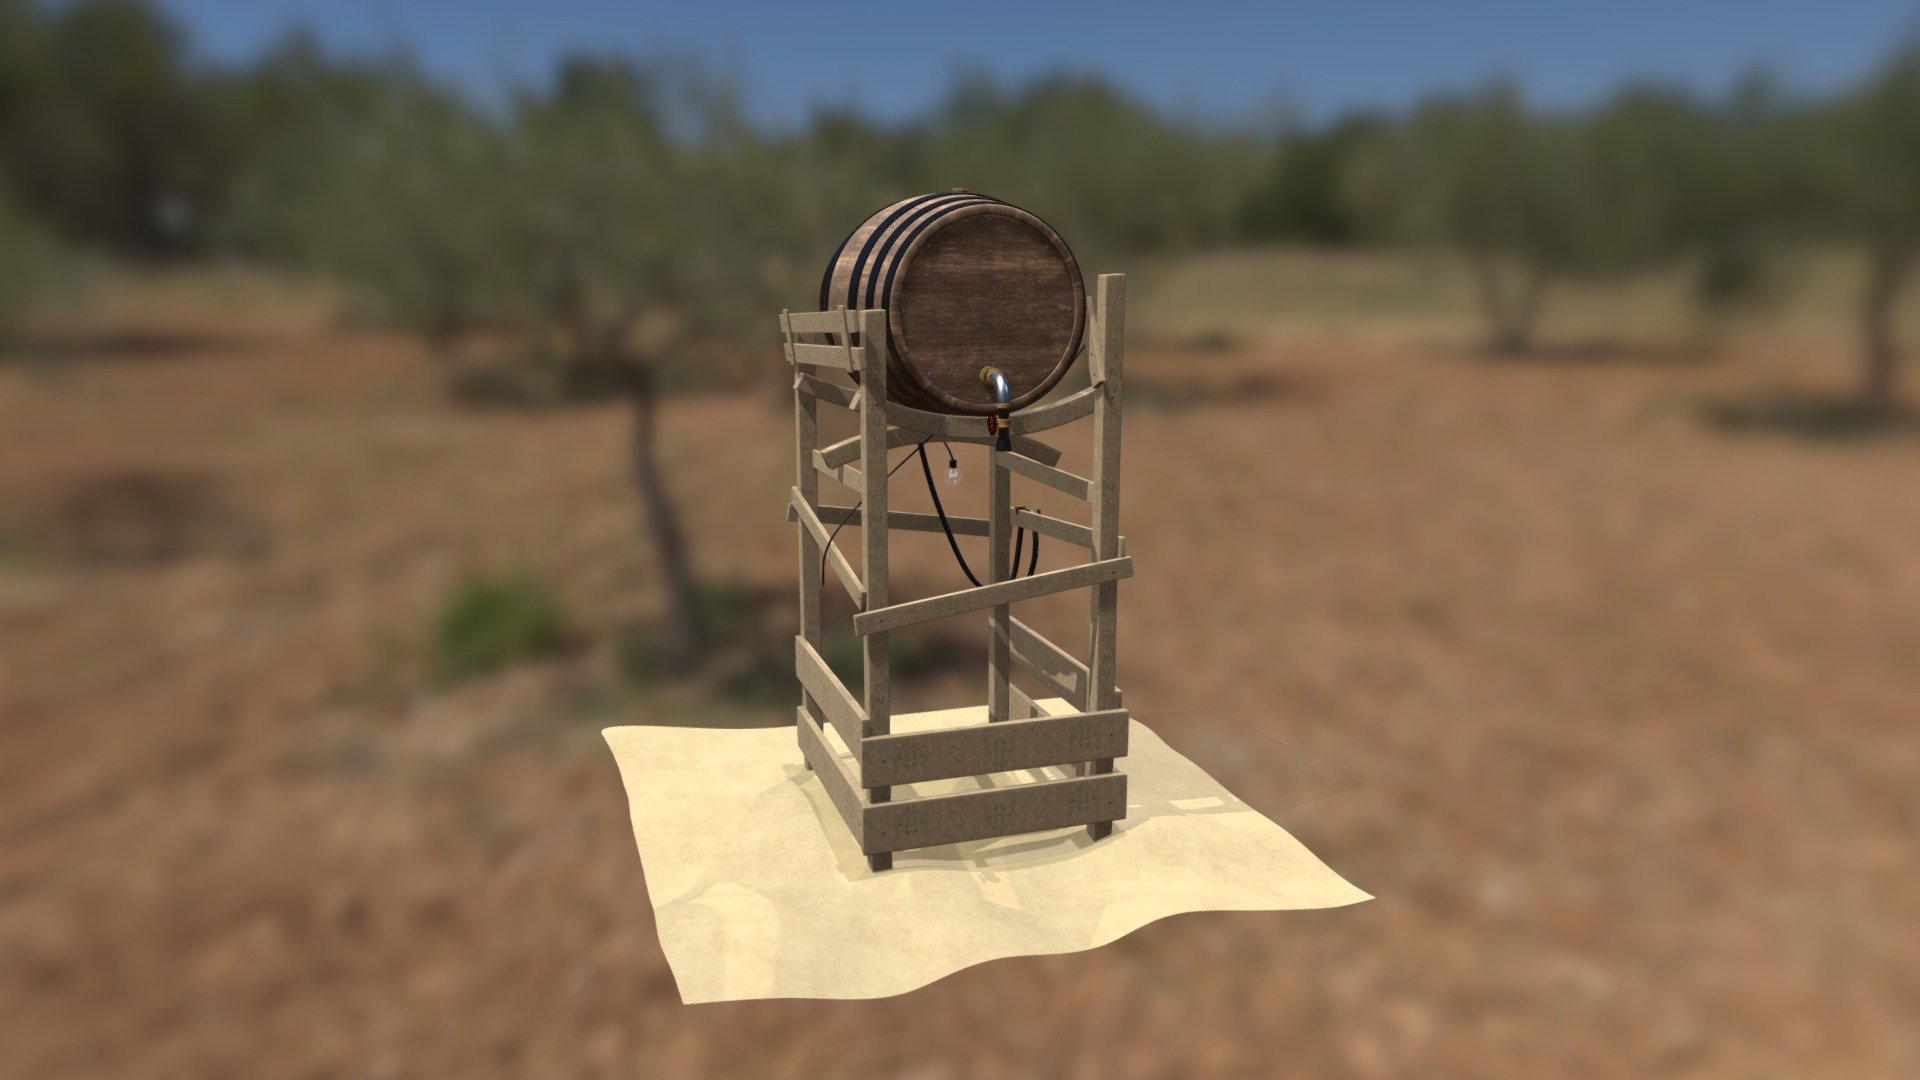 3D Model of a Barrel with Maya - Barrel - 3D model by daniguirao 3d model